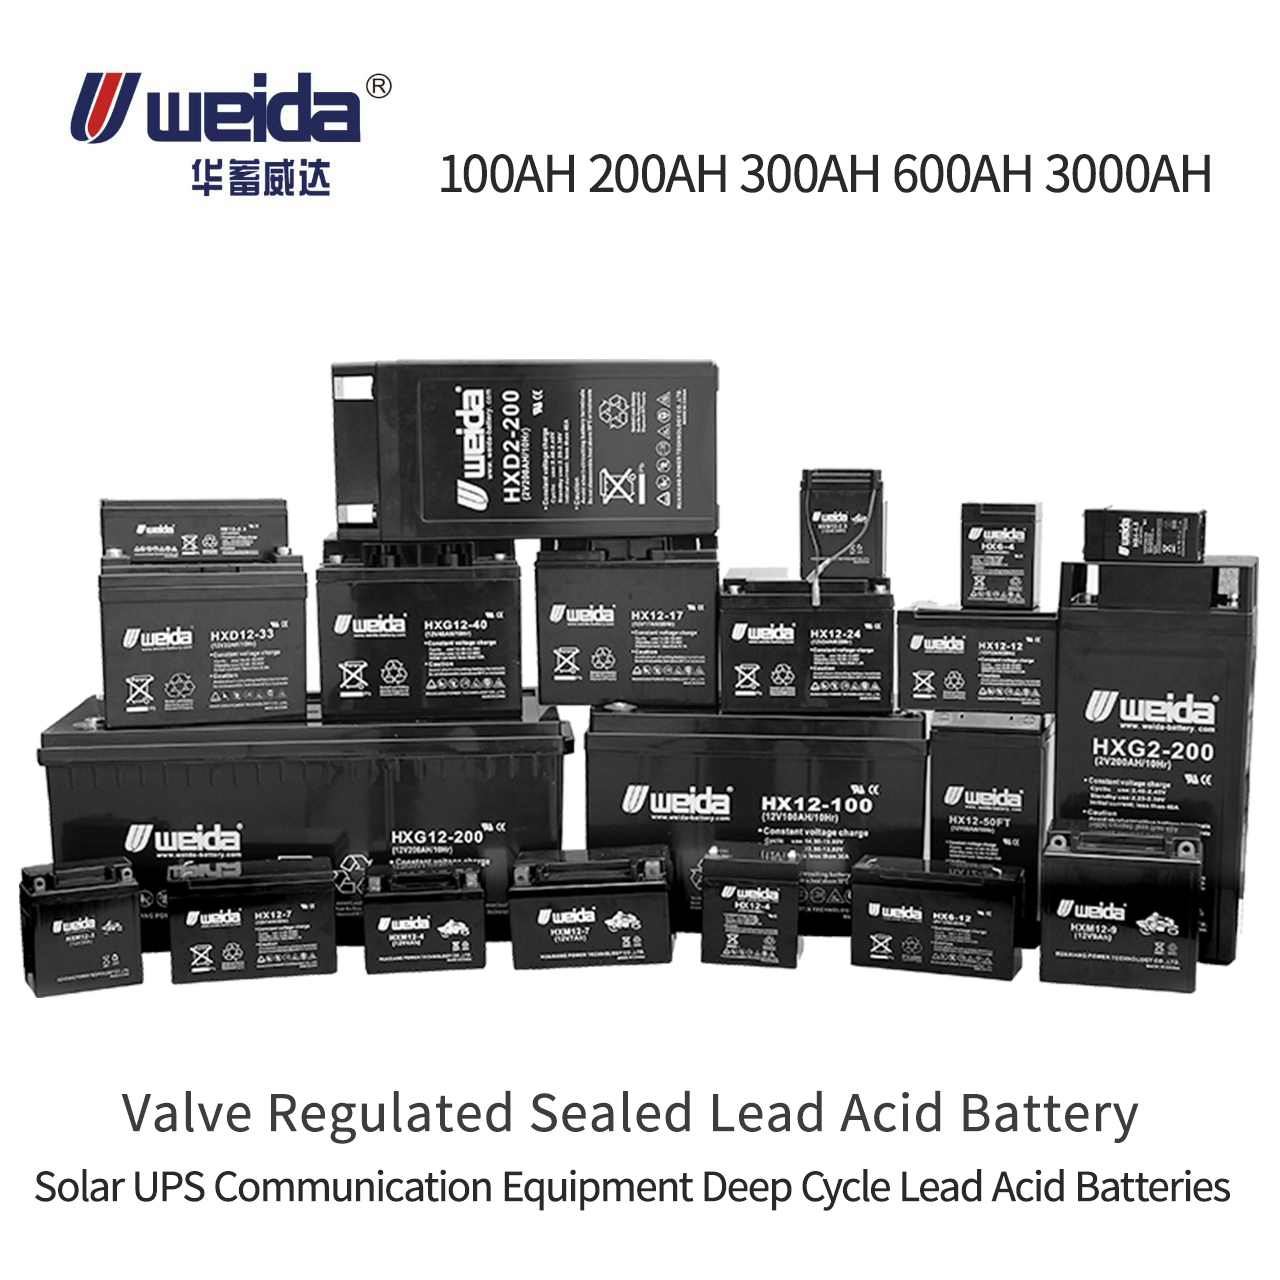 Weida® UPS sla batería agm válvula regulada de plomo ácido 100ah 200ah batería de plomo de ciclo profundo batería de plomo ácido solar